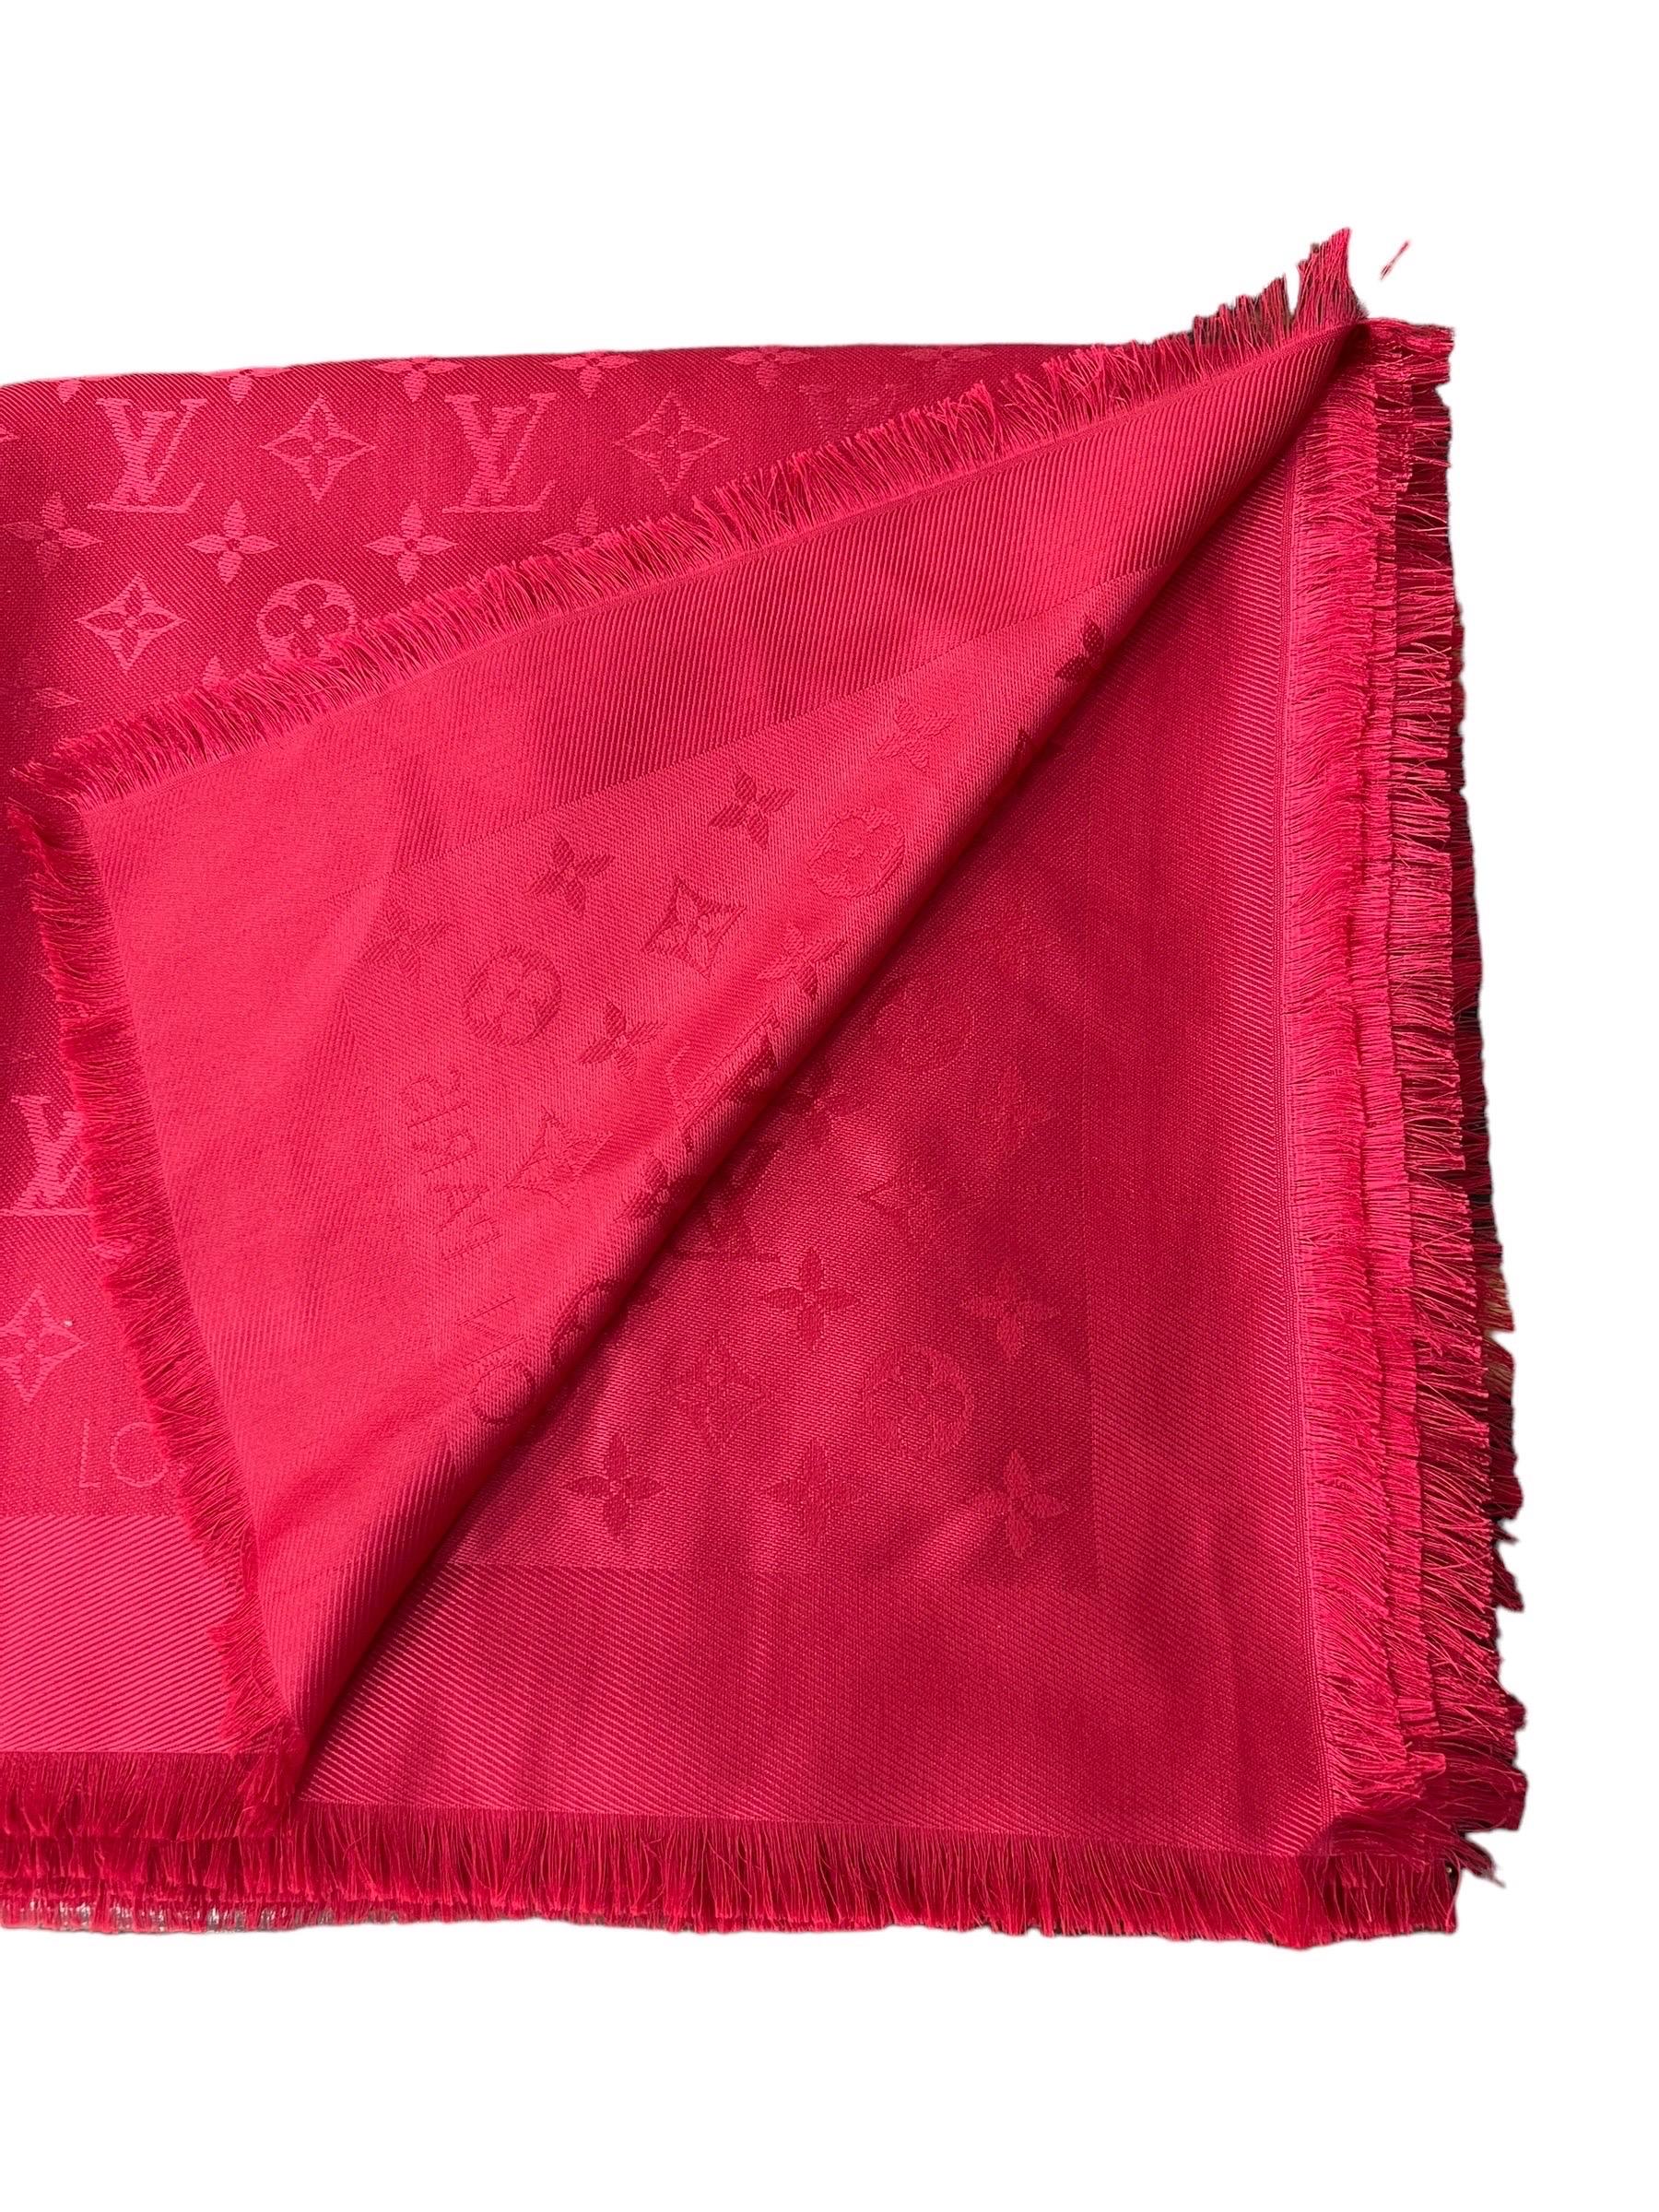 Louis Vuitton Scialle Monogram Rosso In Seta E Lana  For Sale 2